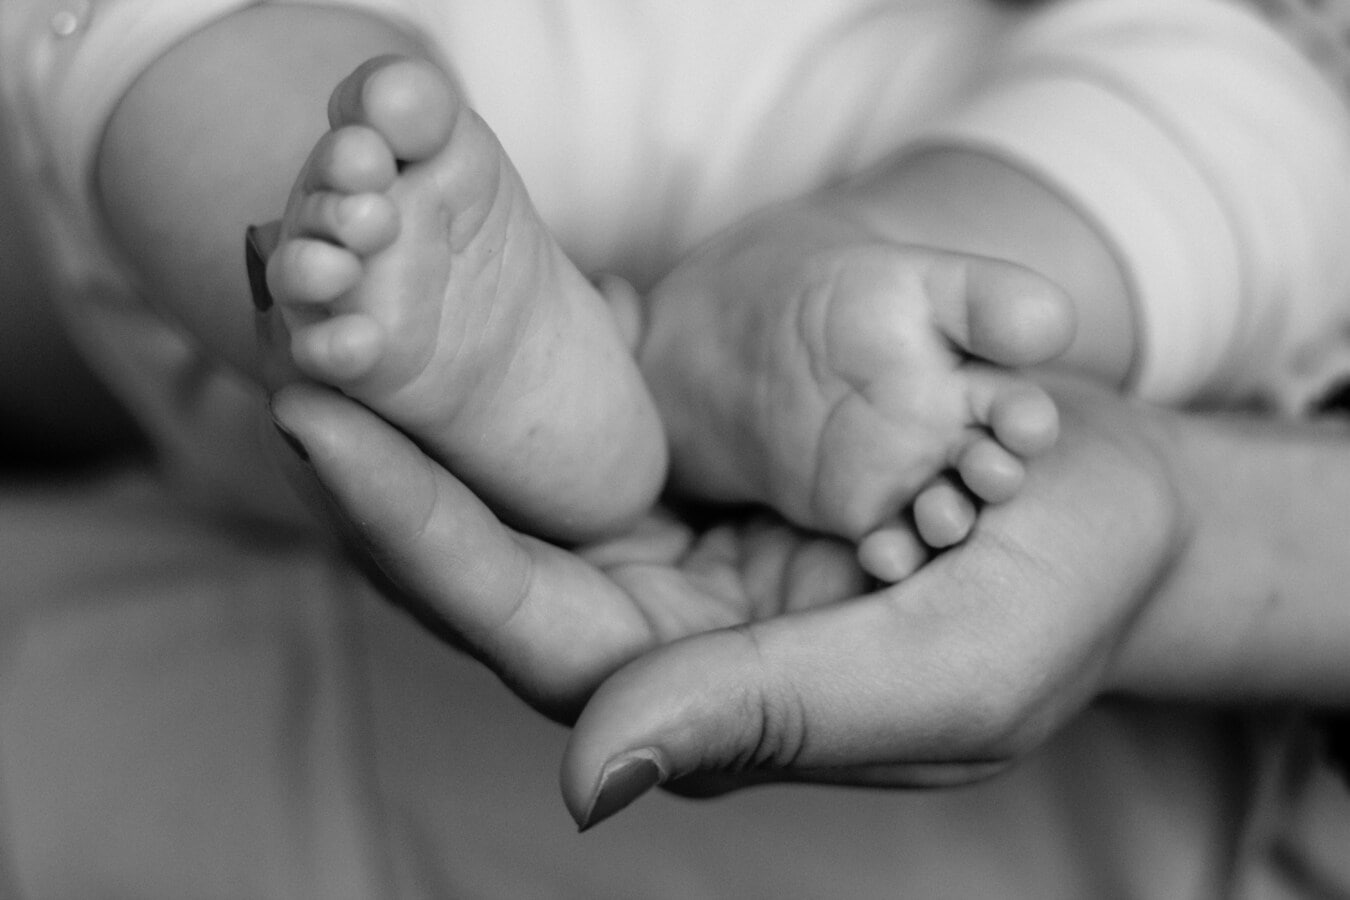 νεογέννητο, μωρό, πόδια, μικρό παιδί, βρέφος, πόδια, ξυπόλυτος, πόδι, μητέρα, εκμετάλλευση